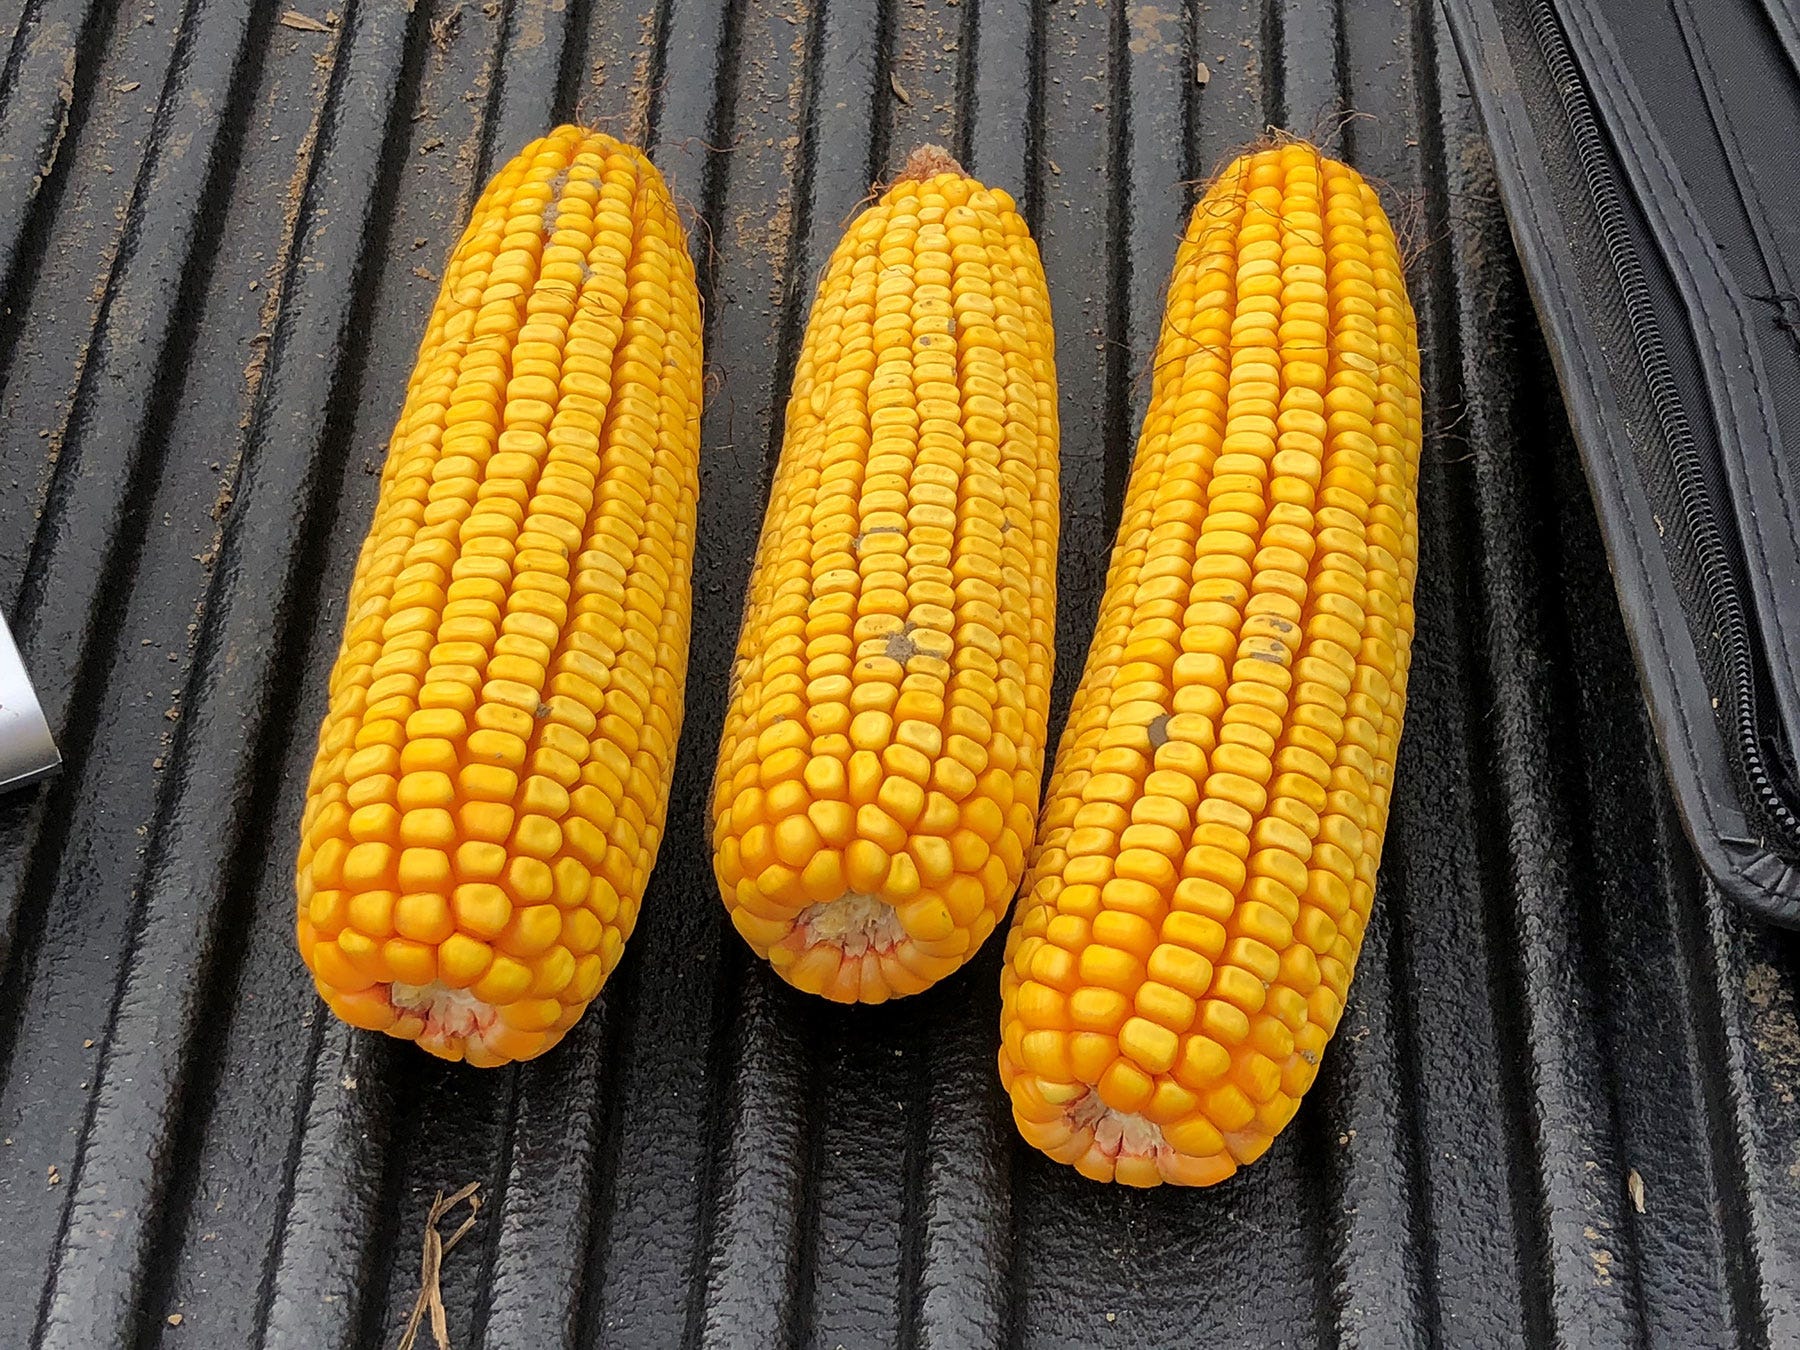 3 shucked ears of corn lying in a row